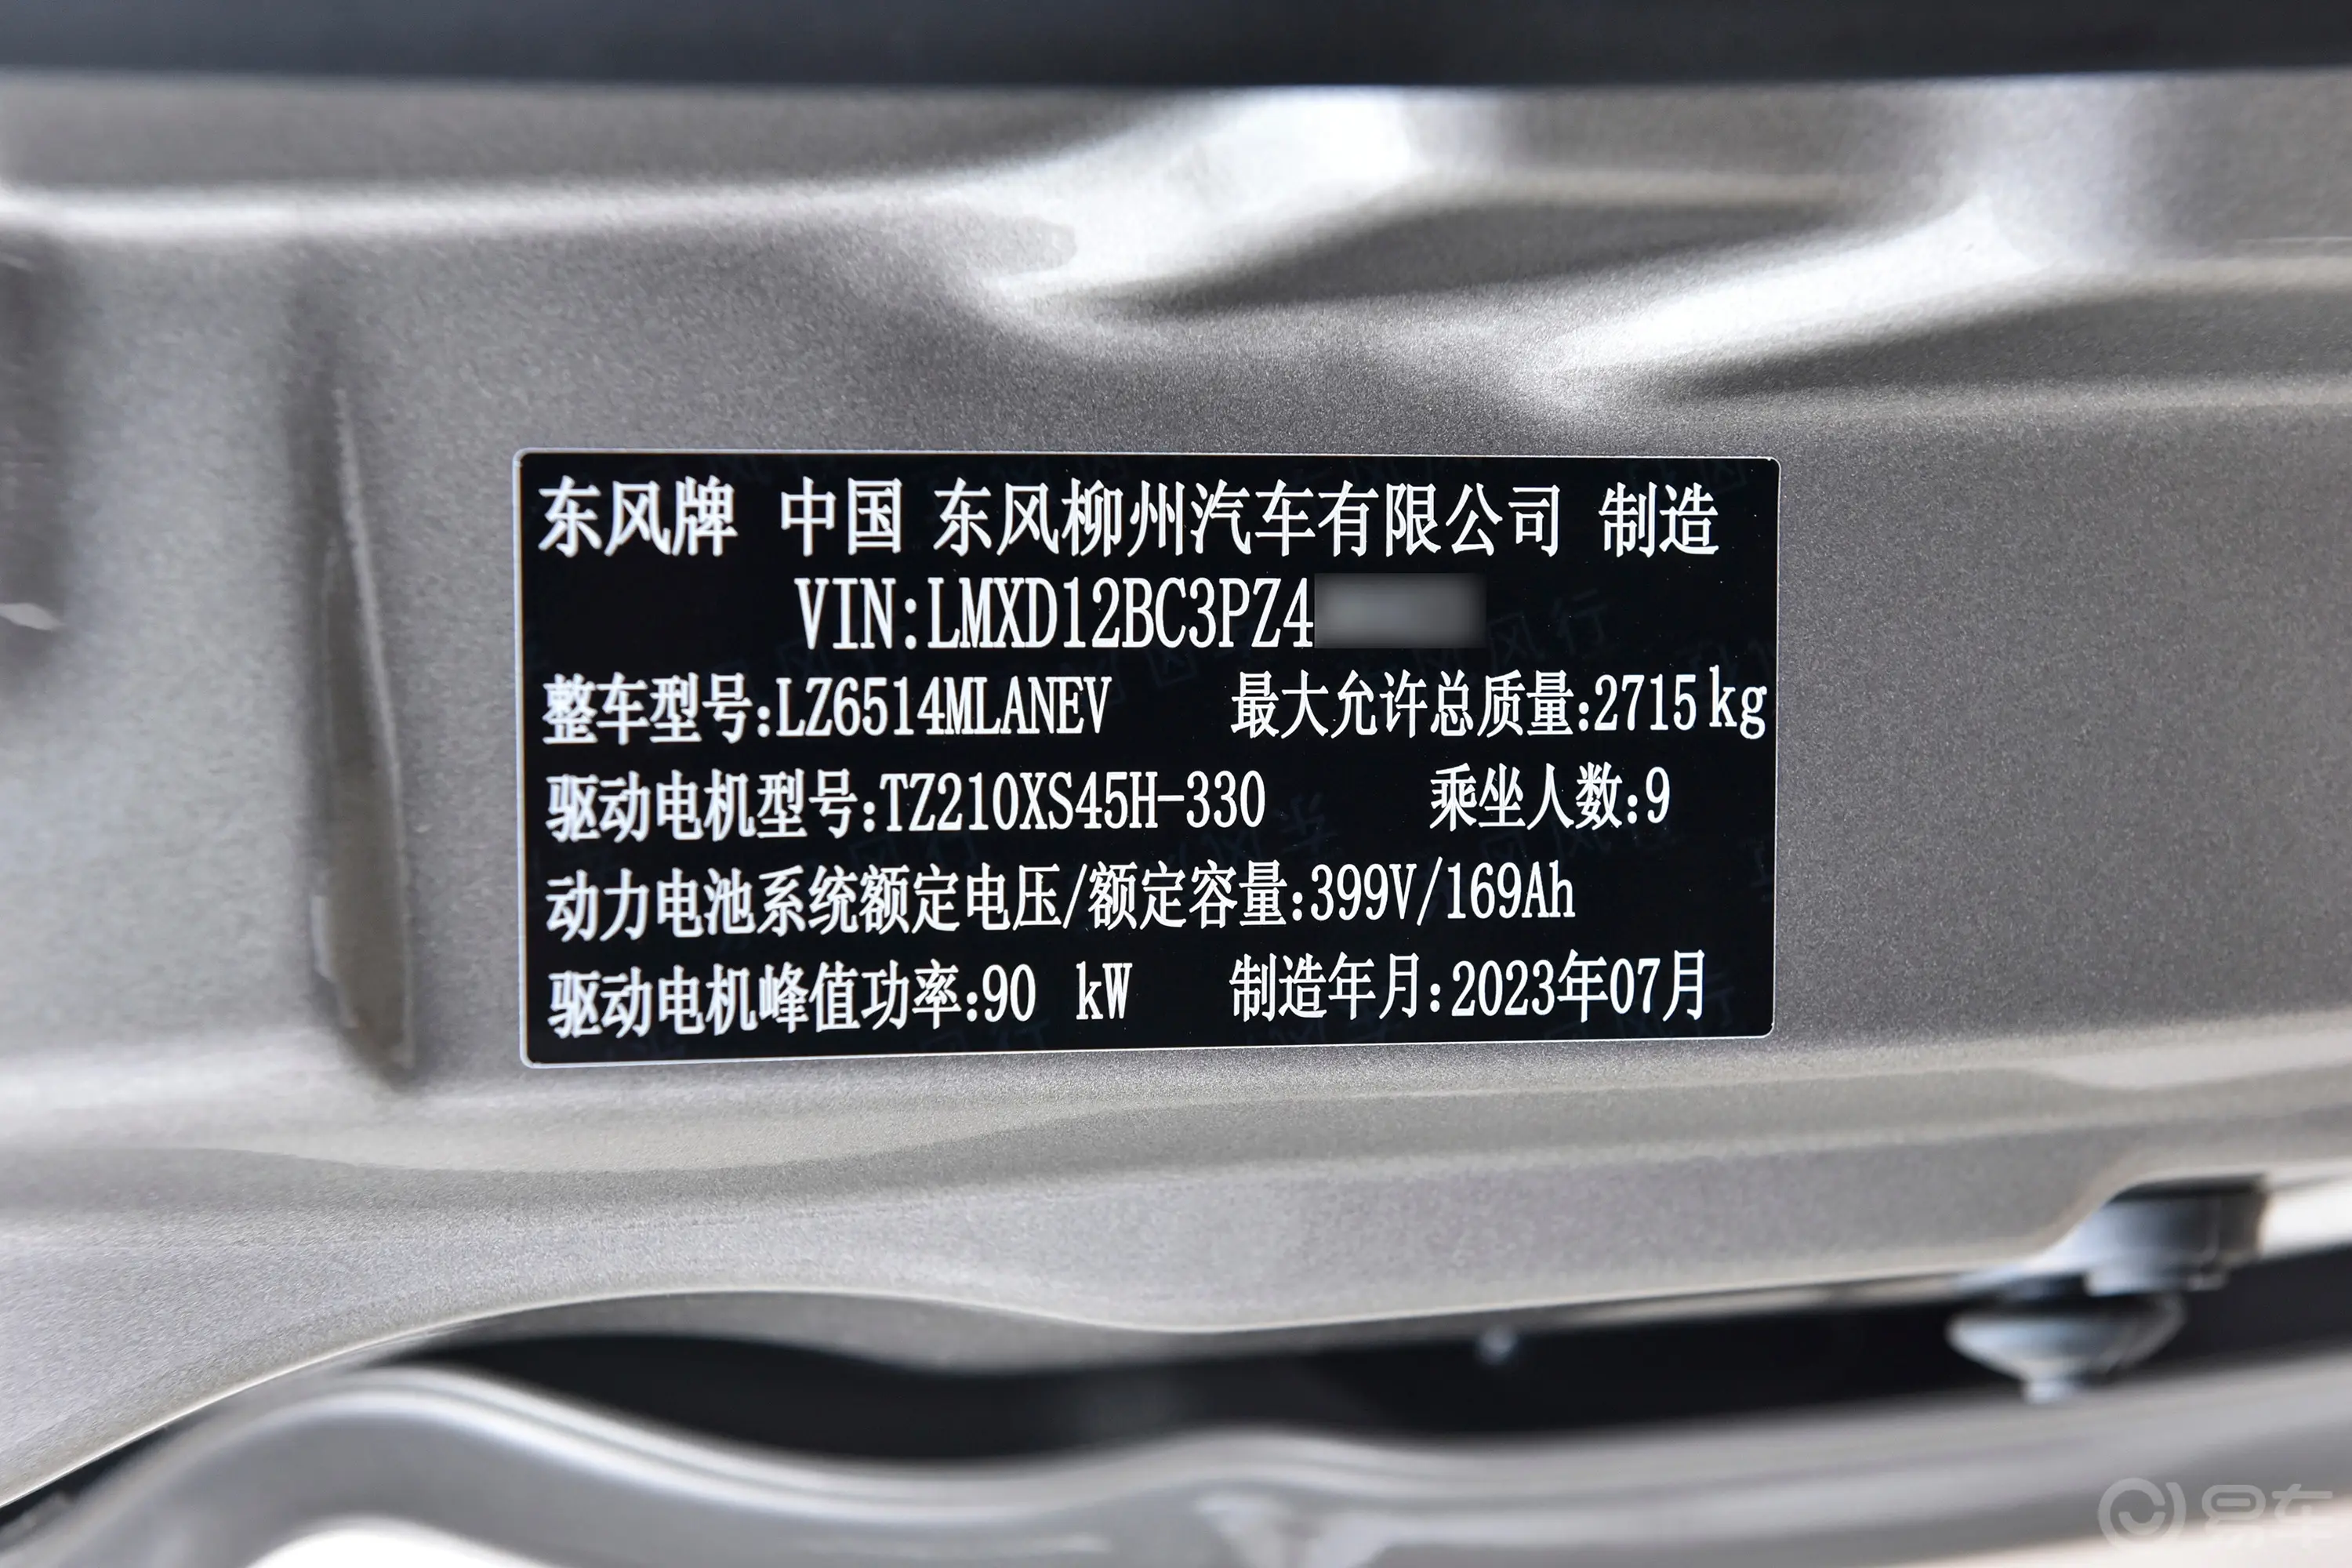 菱智M5 EV客运版 401km 标准型 9座车辆信息铭牌